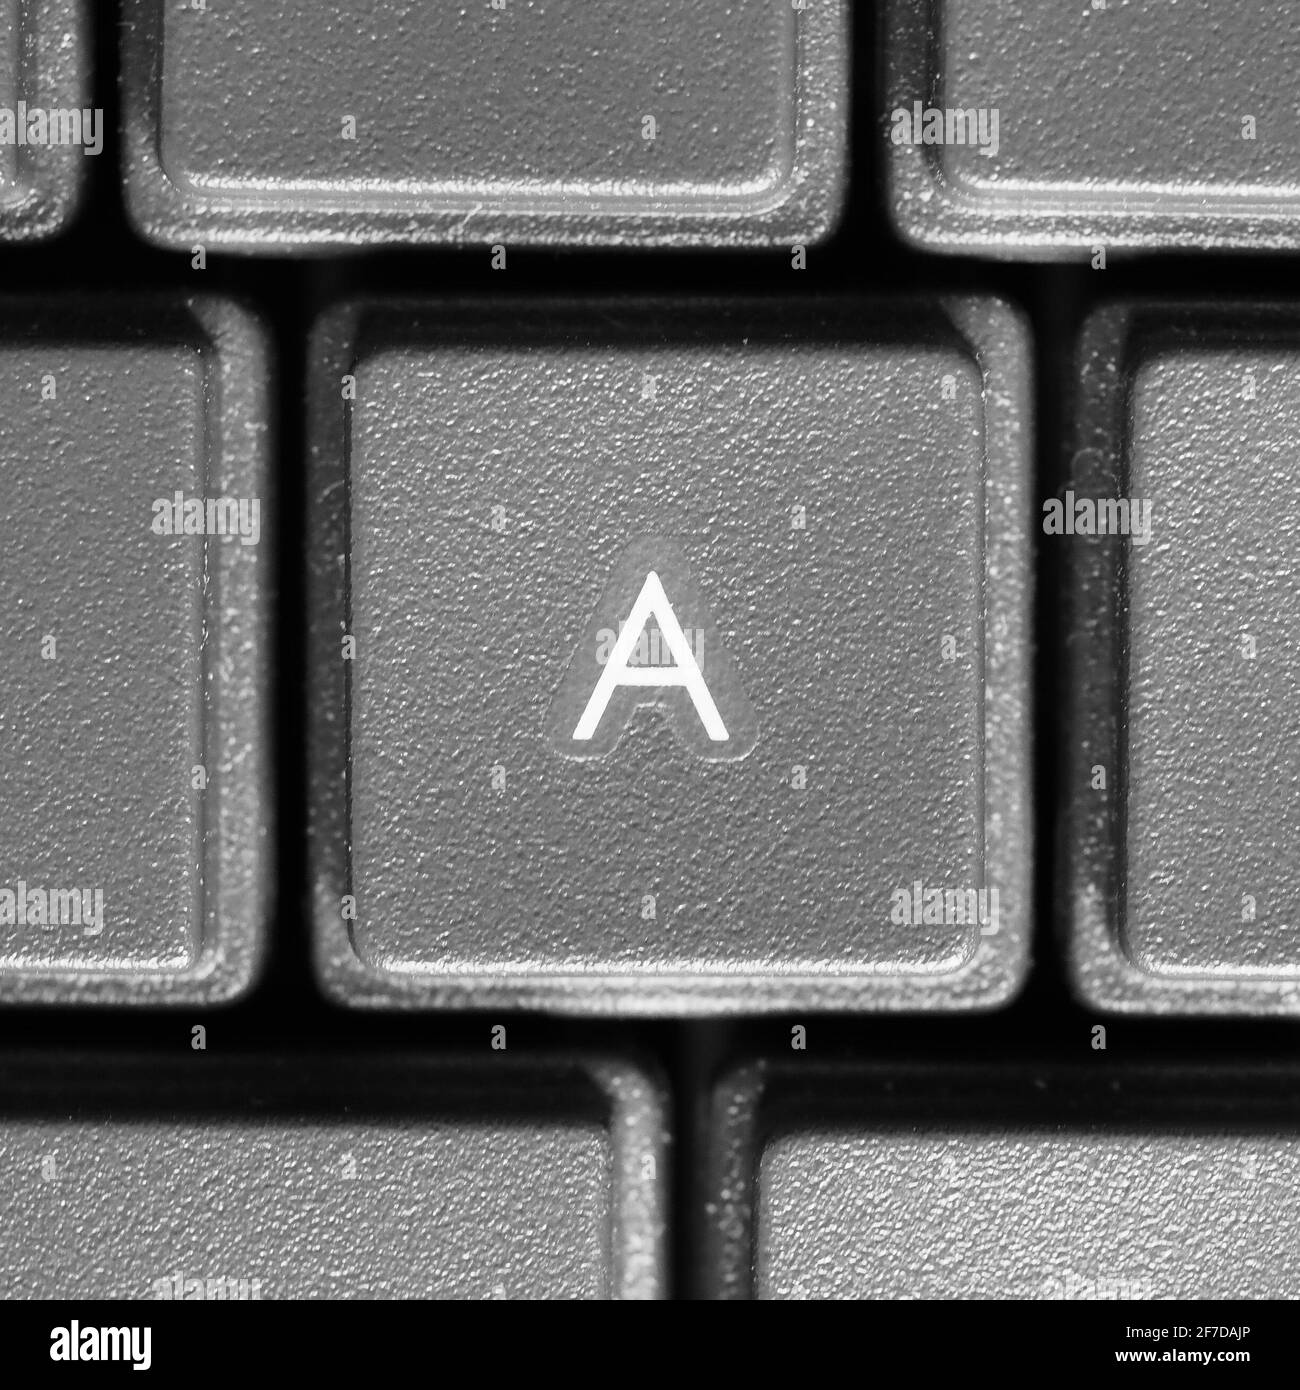 Lettre A sur le clavier de l'ordinateur Photo Stock - Alamy